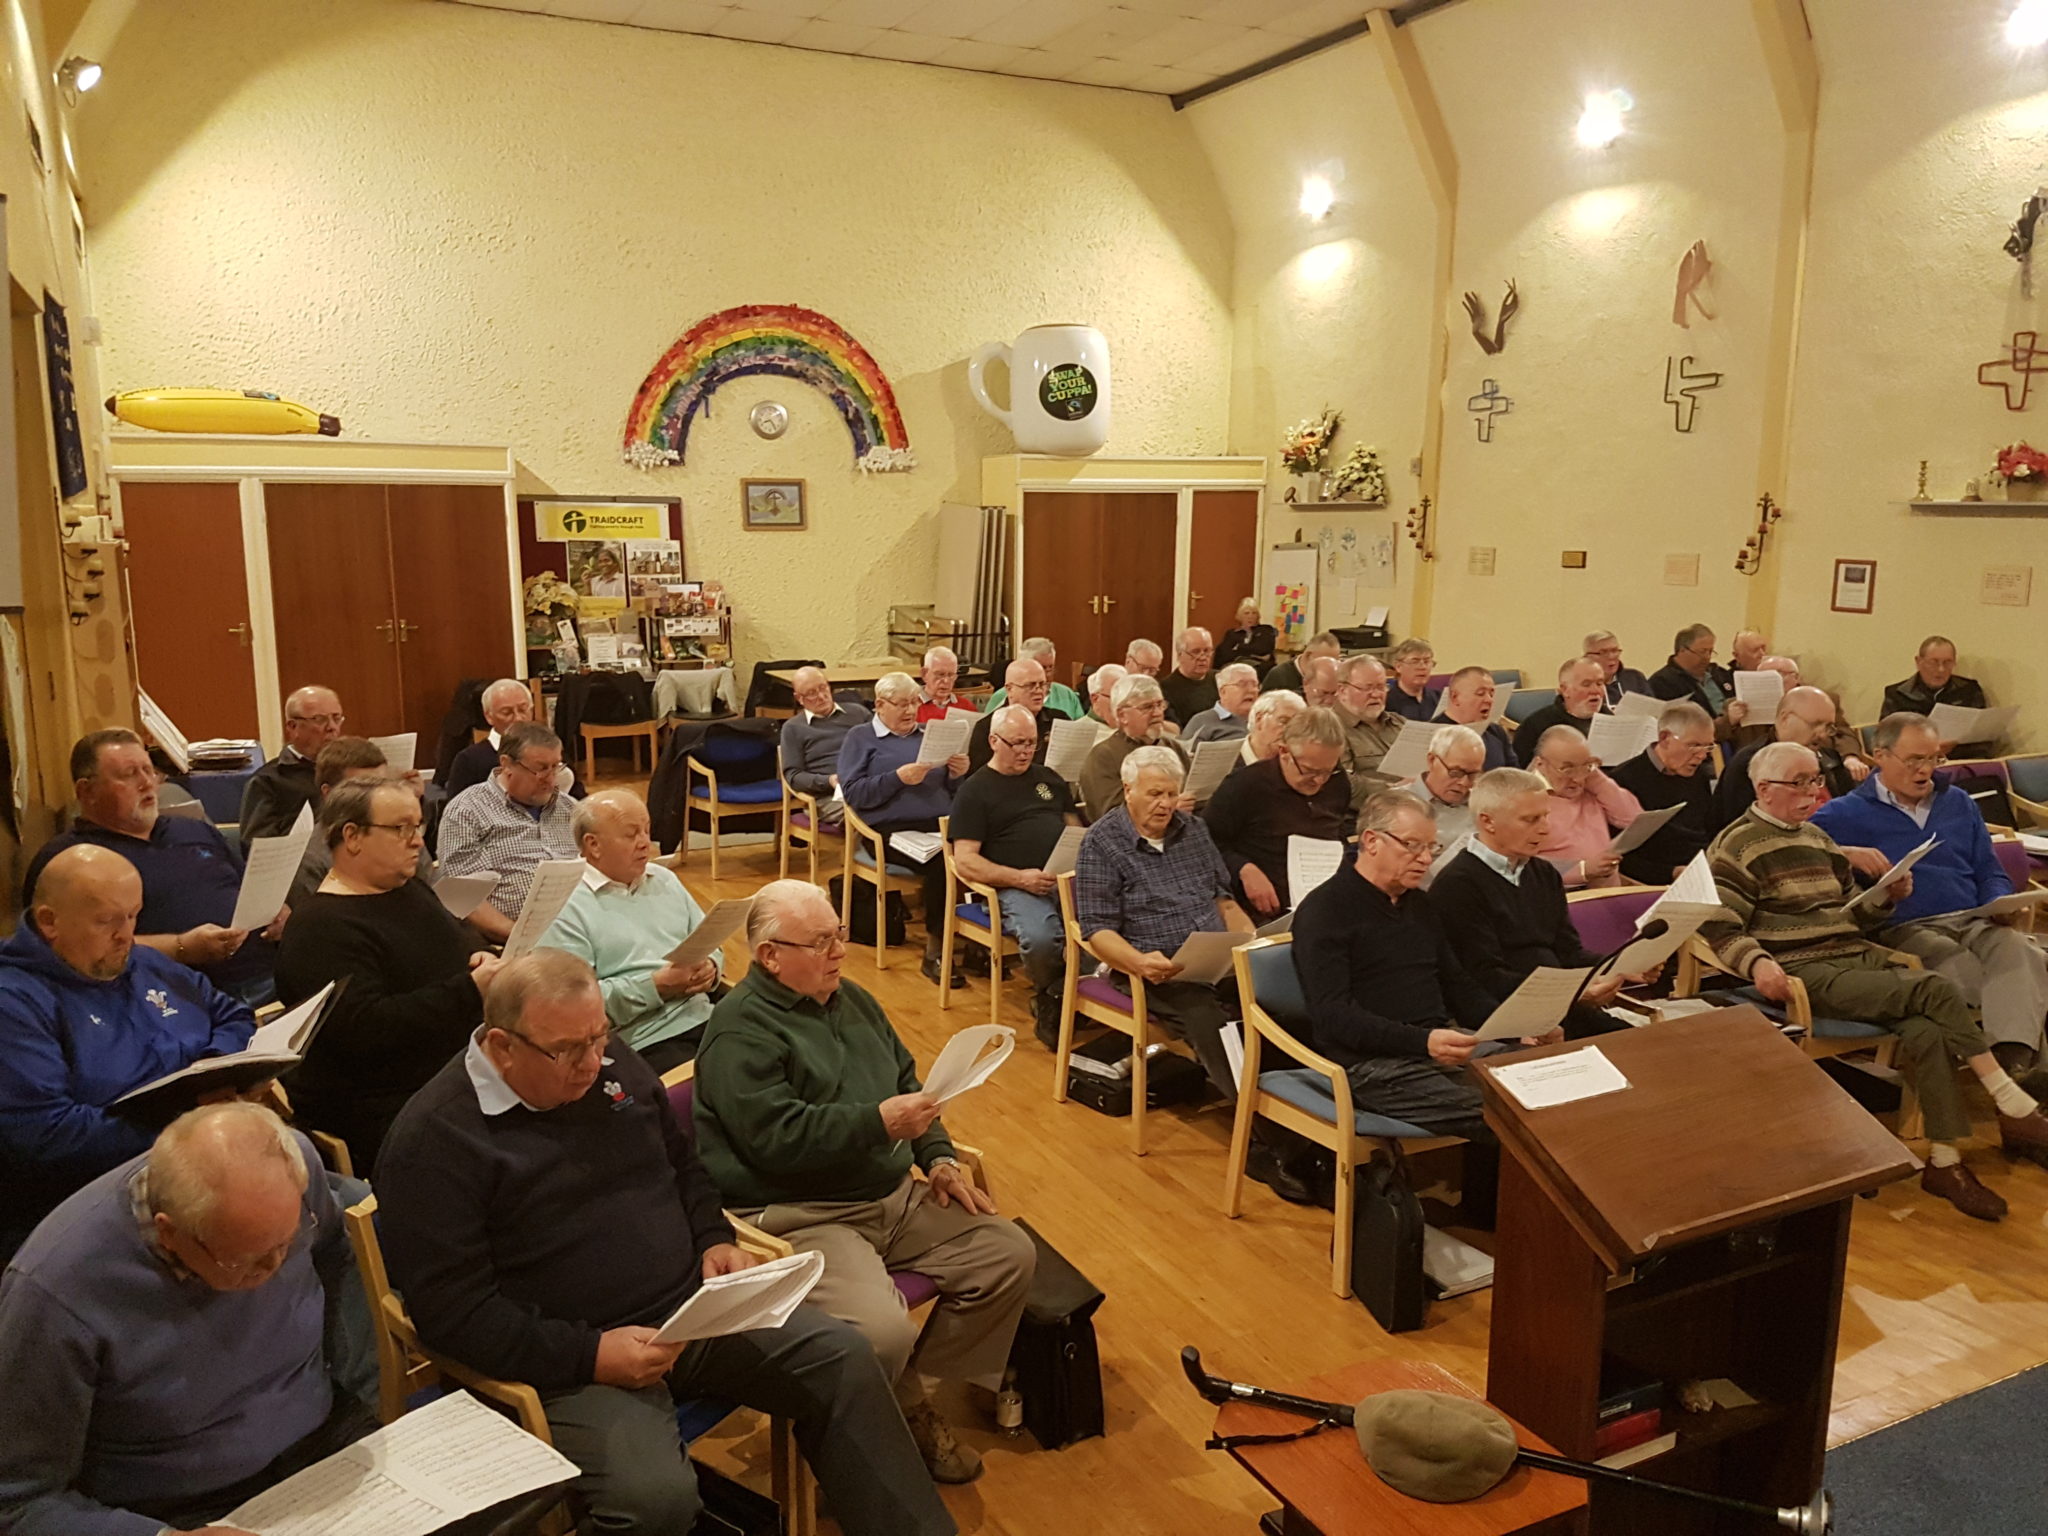 Pontnewydd Male Voice Choir rehearsing